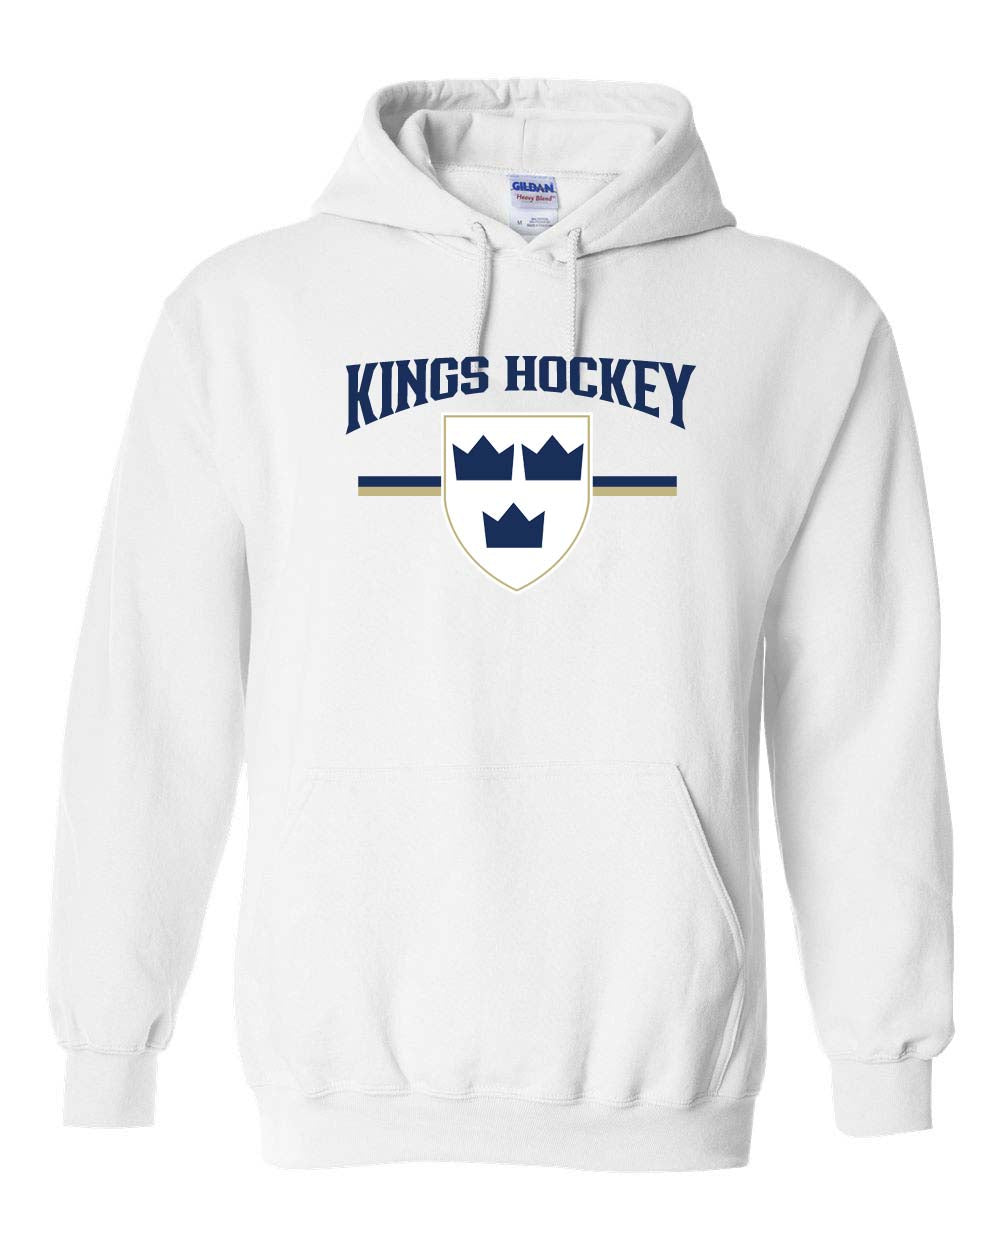 Kings Hockey Design 5 Hooded Sweatshirt